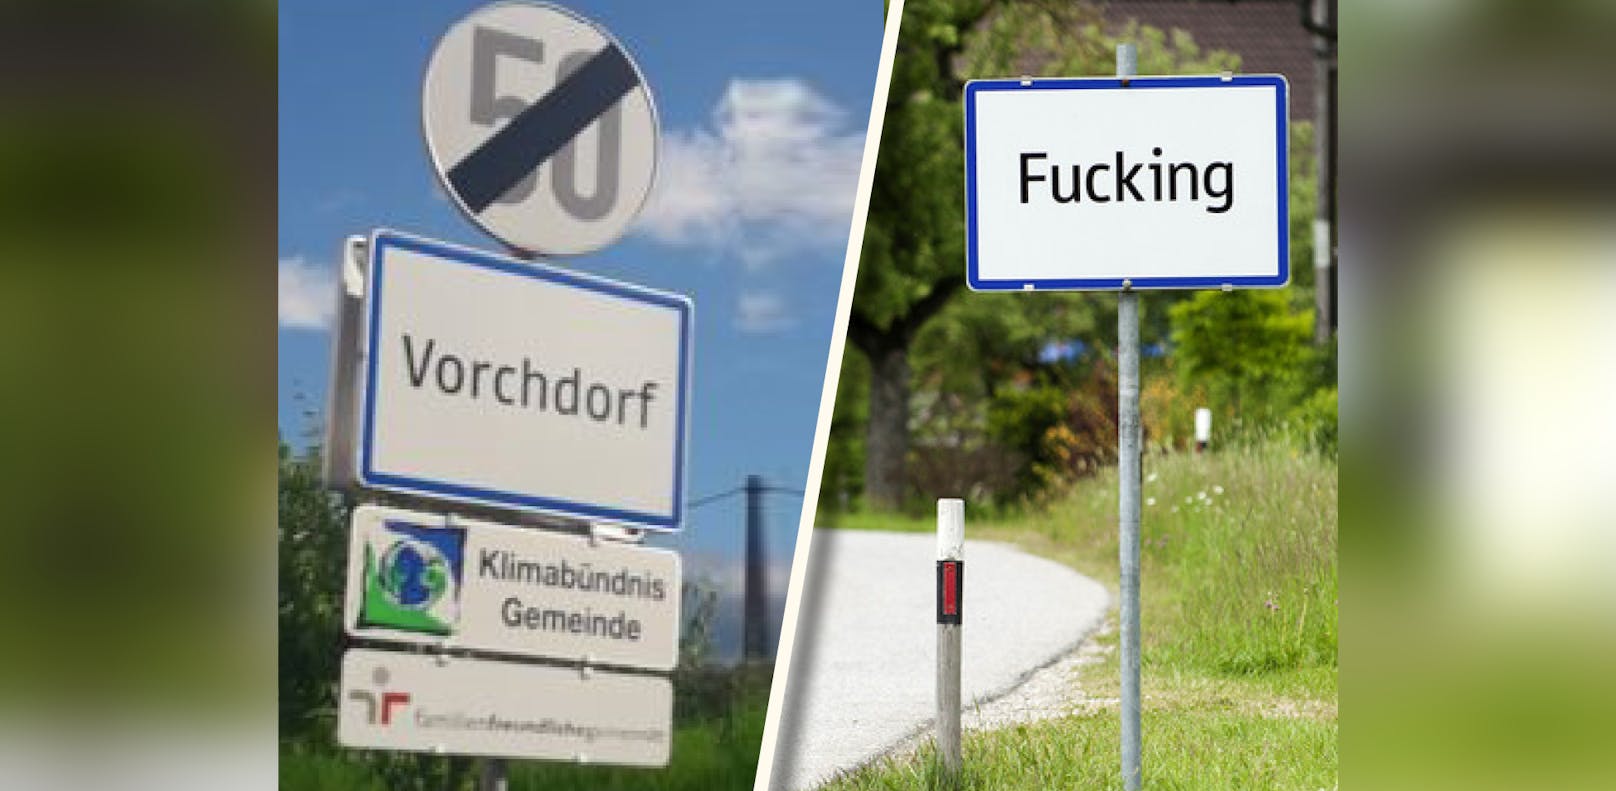 Vorchdorf ist nicht Fucking – trotzdem stehlen Unbekannte zur Zeit gerne Ortstaferl aus der Gemeinde.